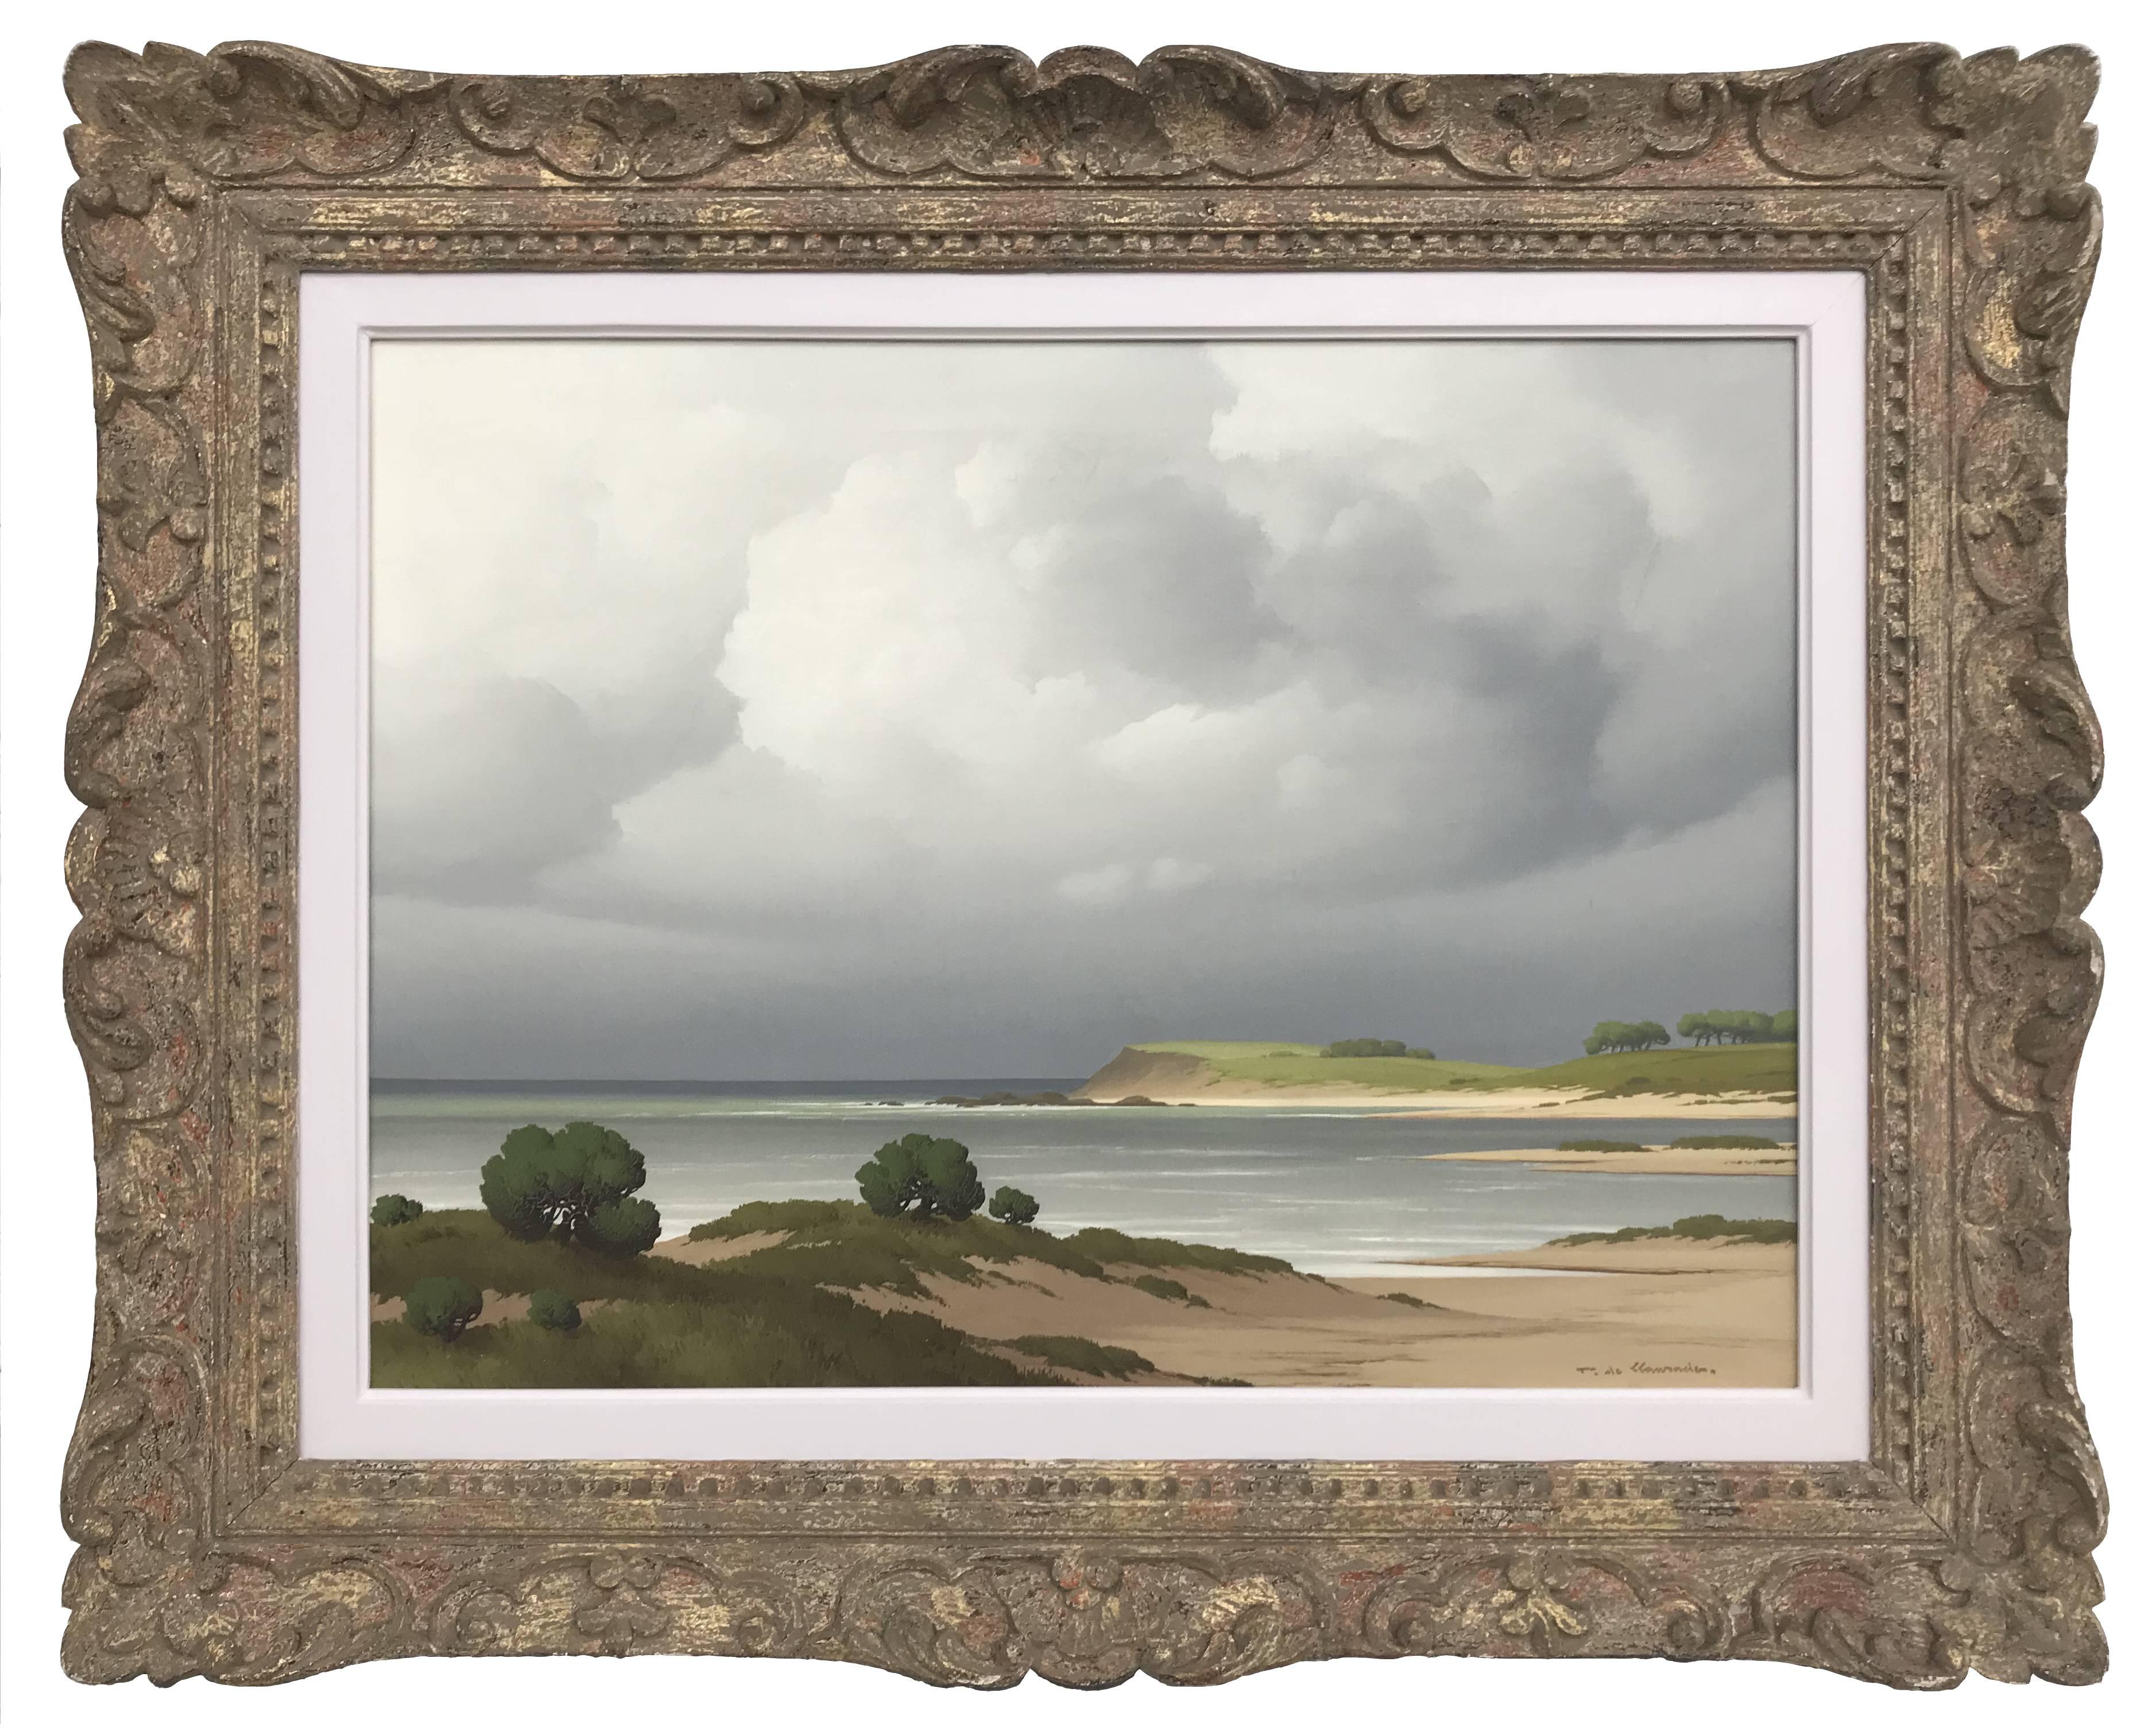 Pierre de Clausade Landscape Painting - Sur le Cote Bretagne 20th Century Post-War French Landscape Seascape Painting